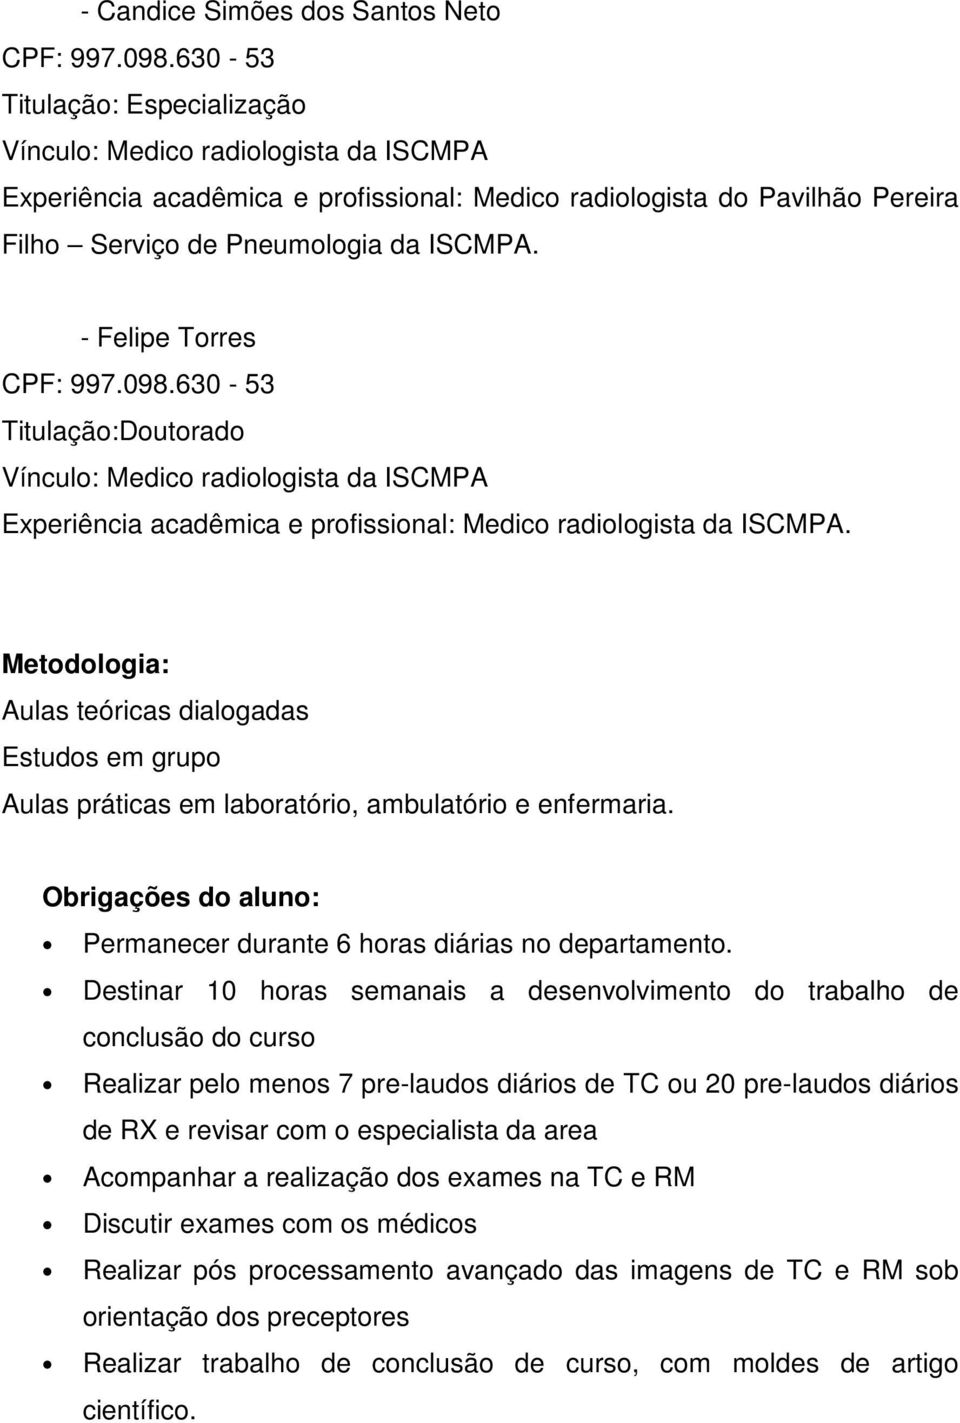 - Felipe Torres CPF: 997.098.630-53 Titulação:Doutorado Vínculo: Medico radiologista da ISCMPA Experiência acadêmica e profissional: Medico radiologista da ISCMPA.